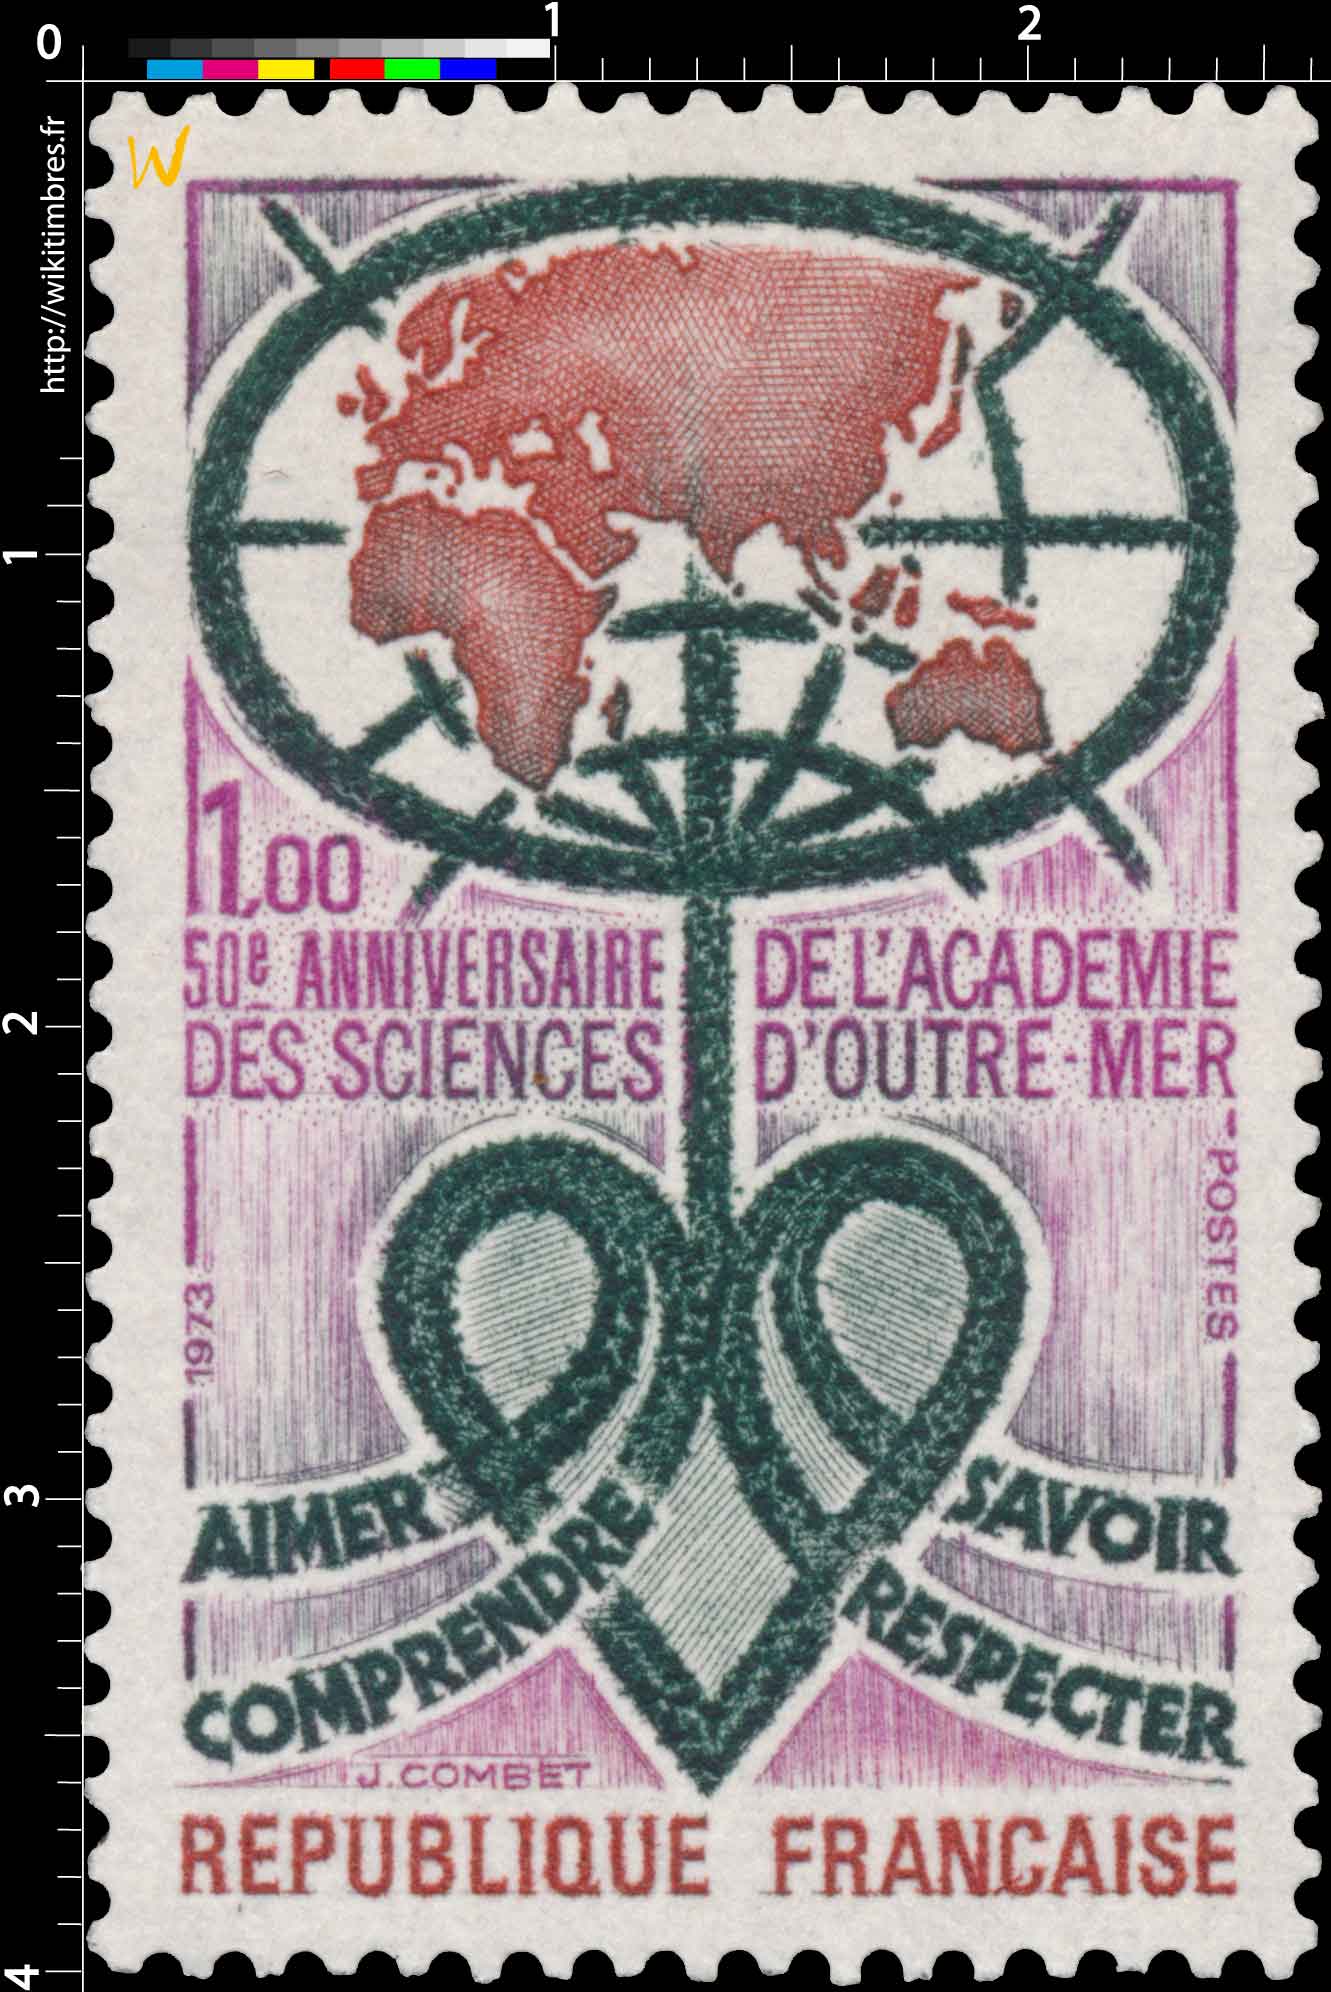 1973 50e ANNIVERSAIRE DE L'ACADÉMIE DES SCIENCES D'OUTRE-MER AIMER COMPRENDRE SAVOIR RESPECTER